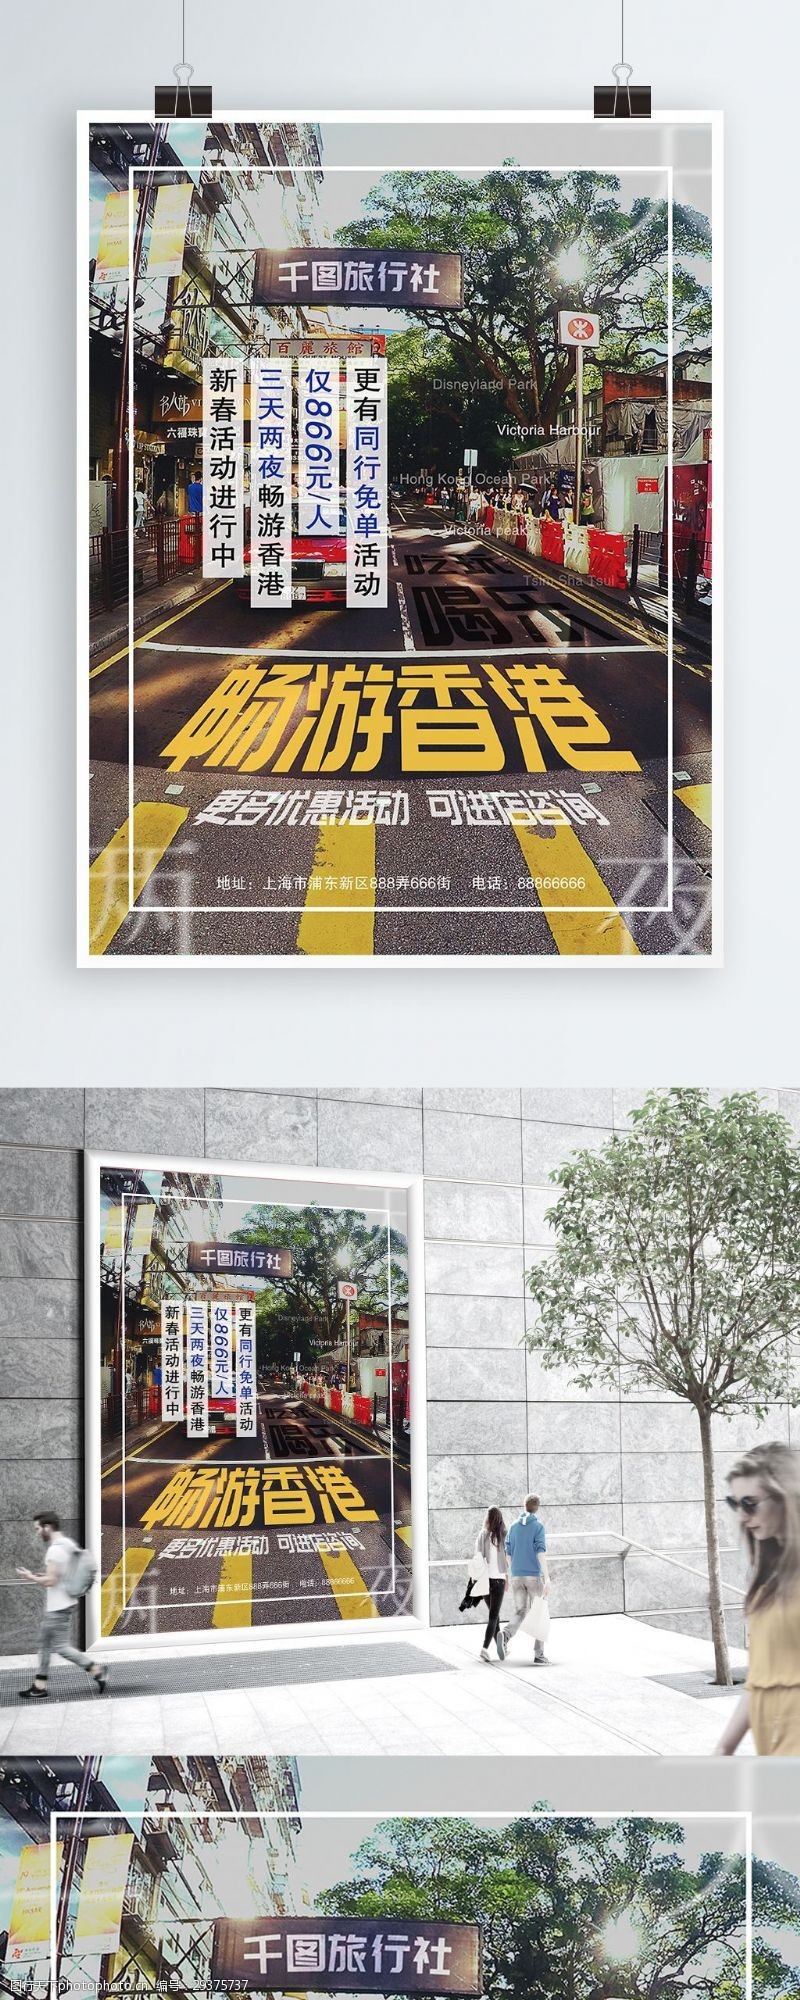 促销旅游新春旅游活动旅行社宣传海报香港旅游